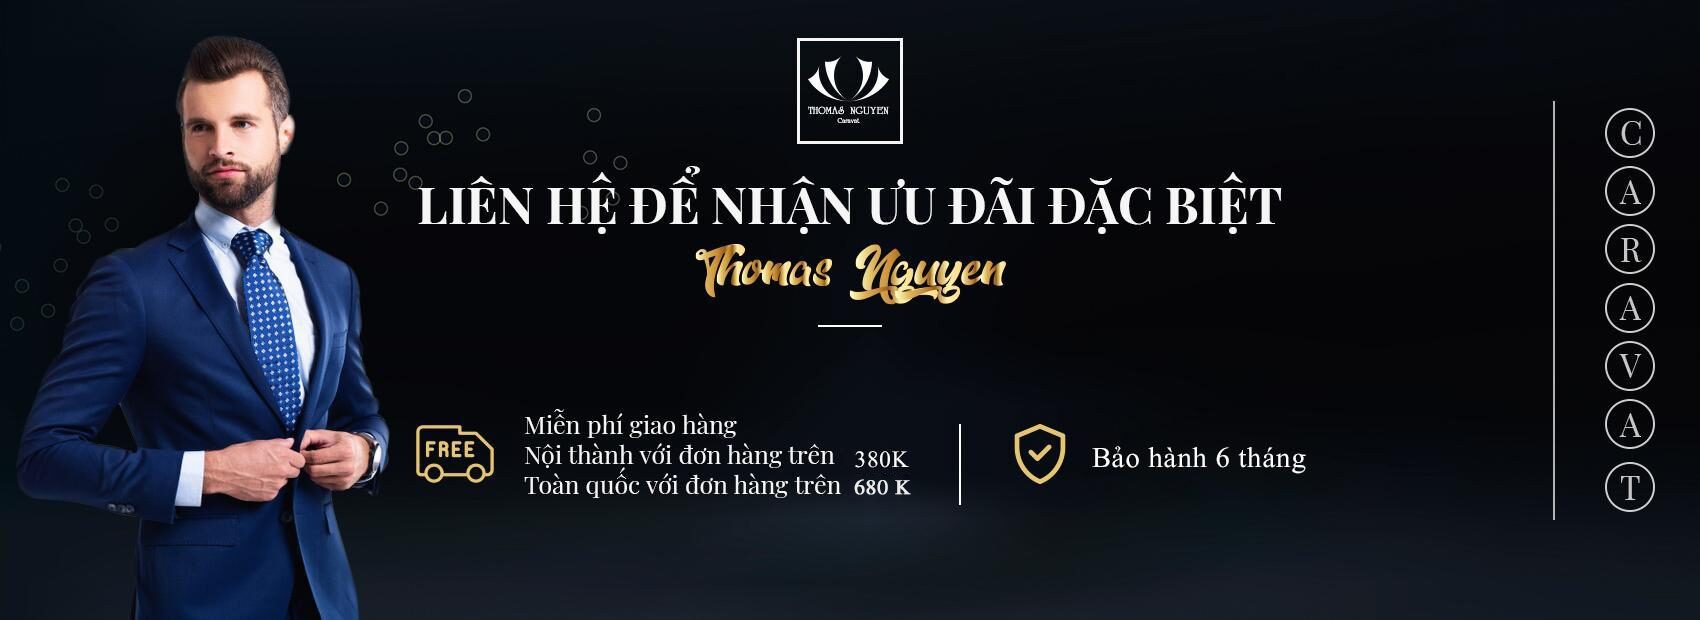 Chính sách ưu đãi khi mua cà vạt Thomas Nguyen